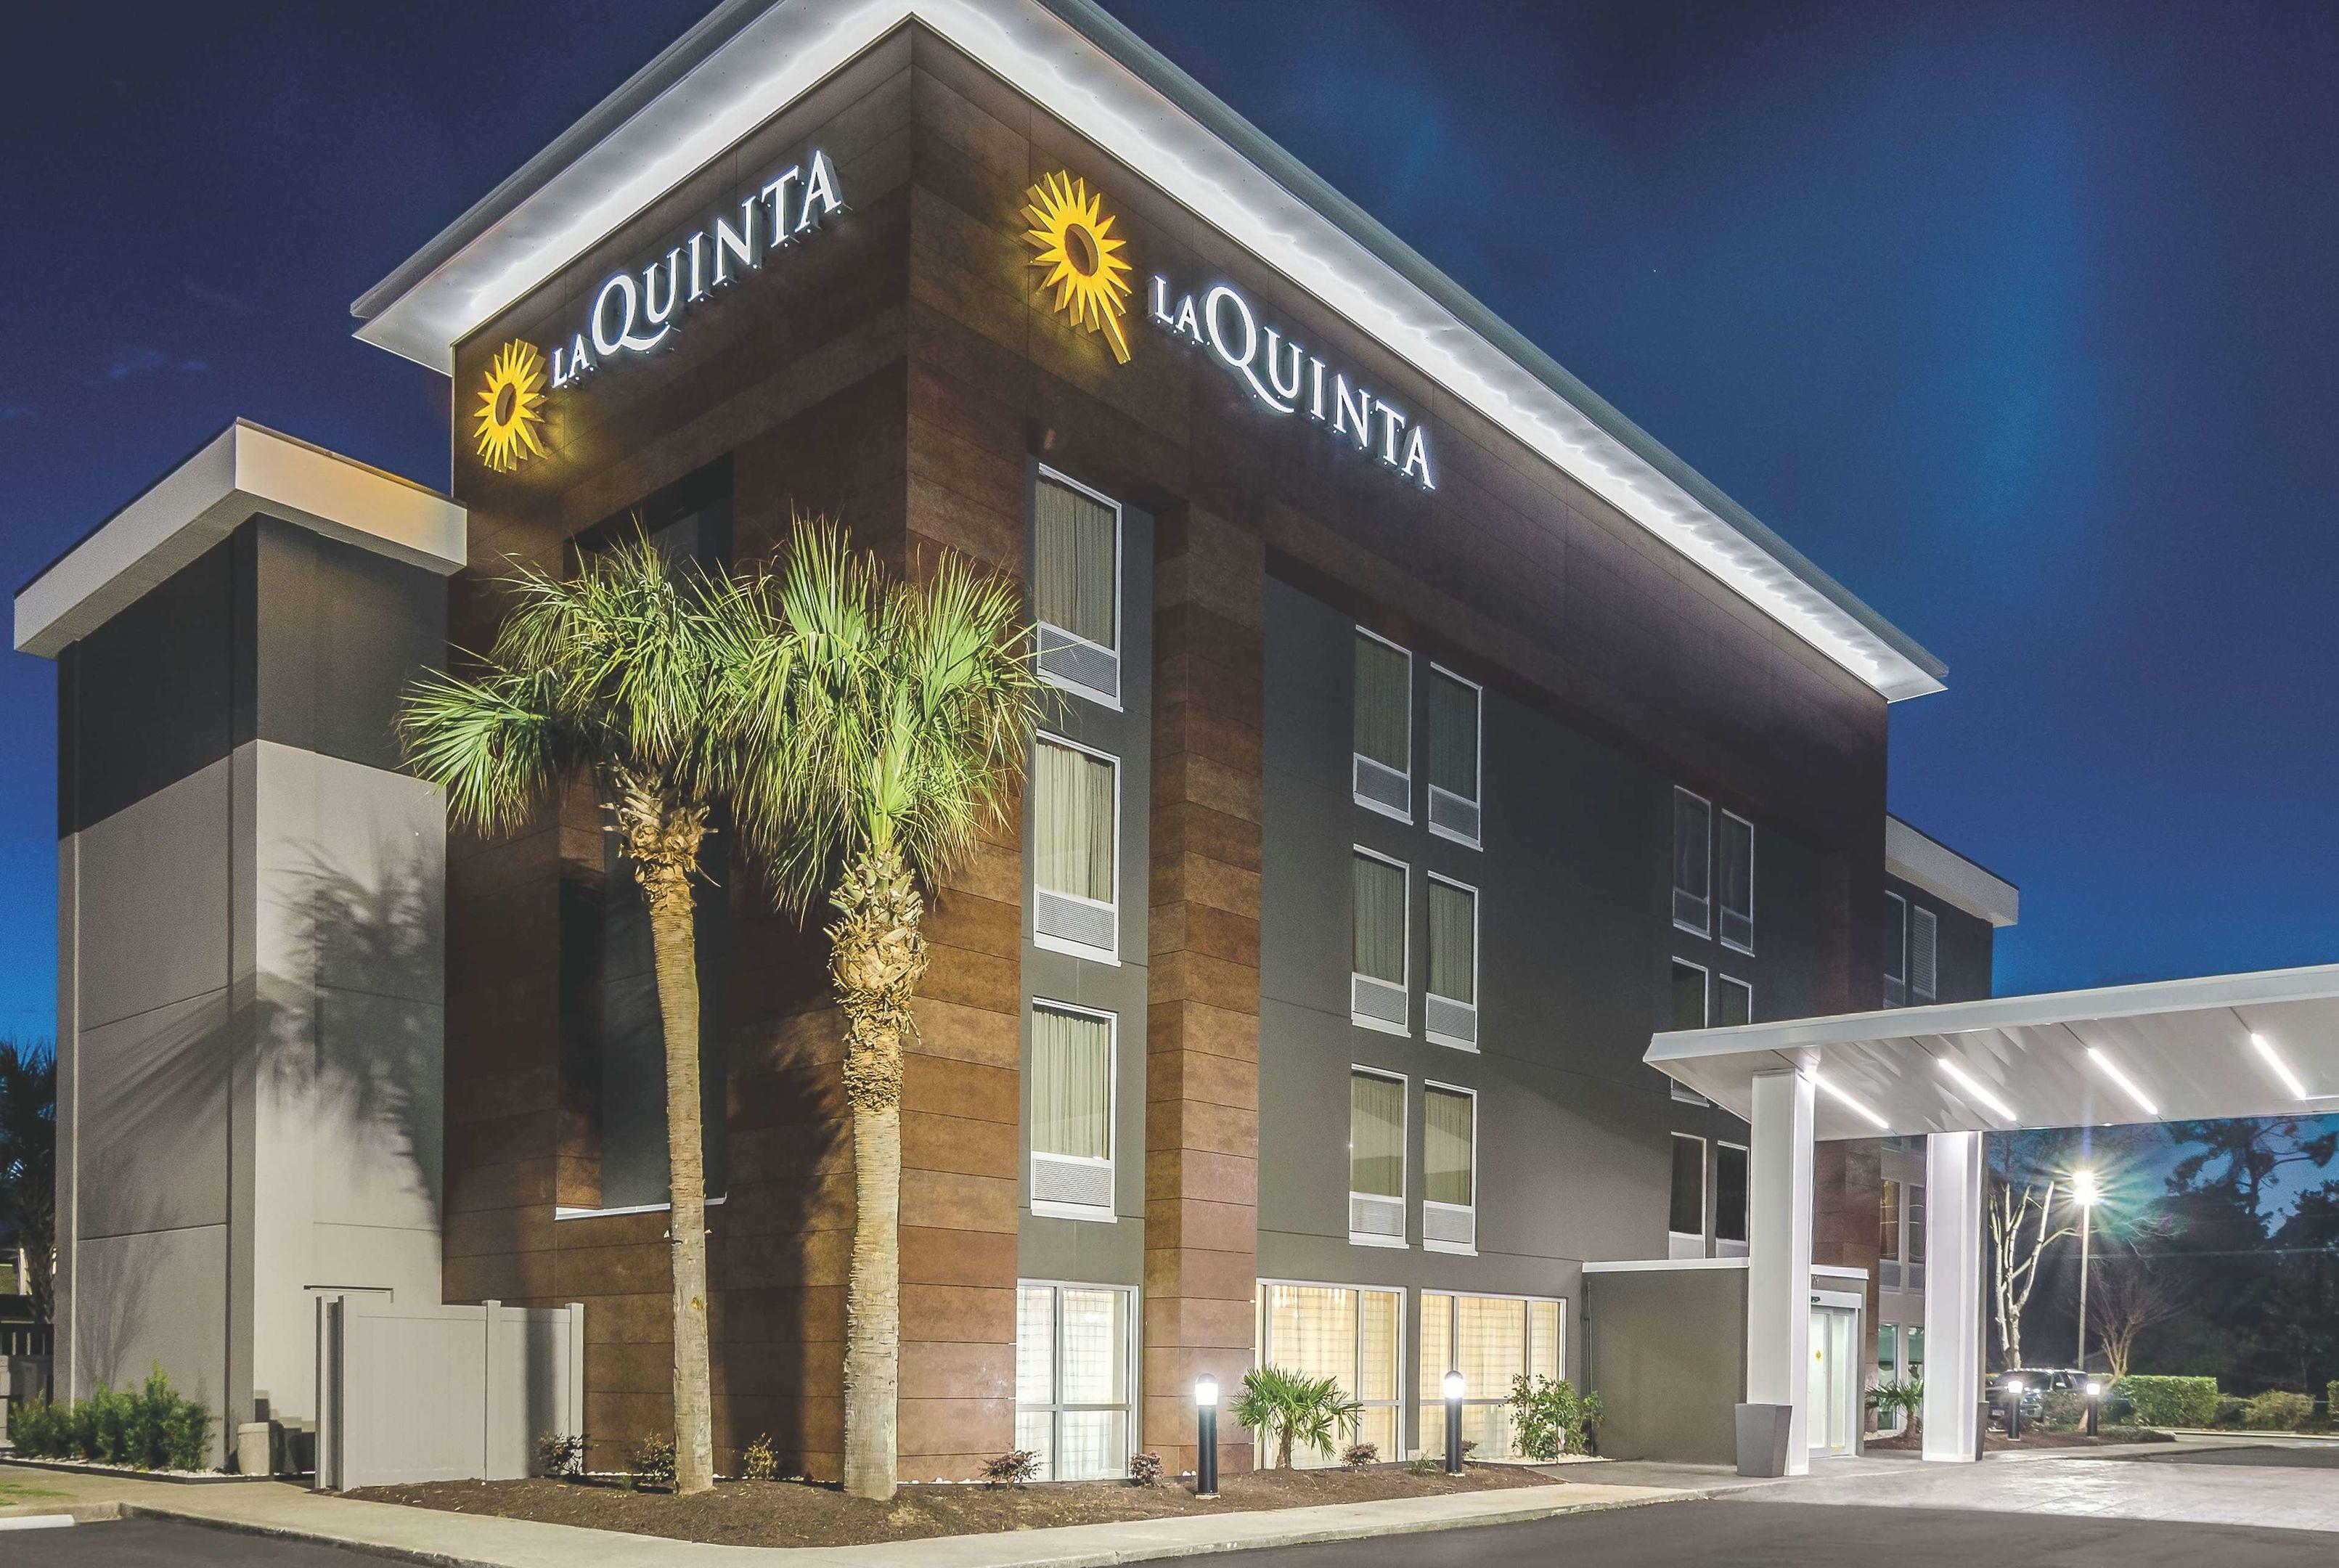 La Quinta Inn & Suites Myrtle Beach at 48th Avenue